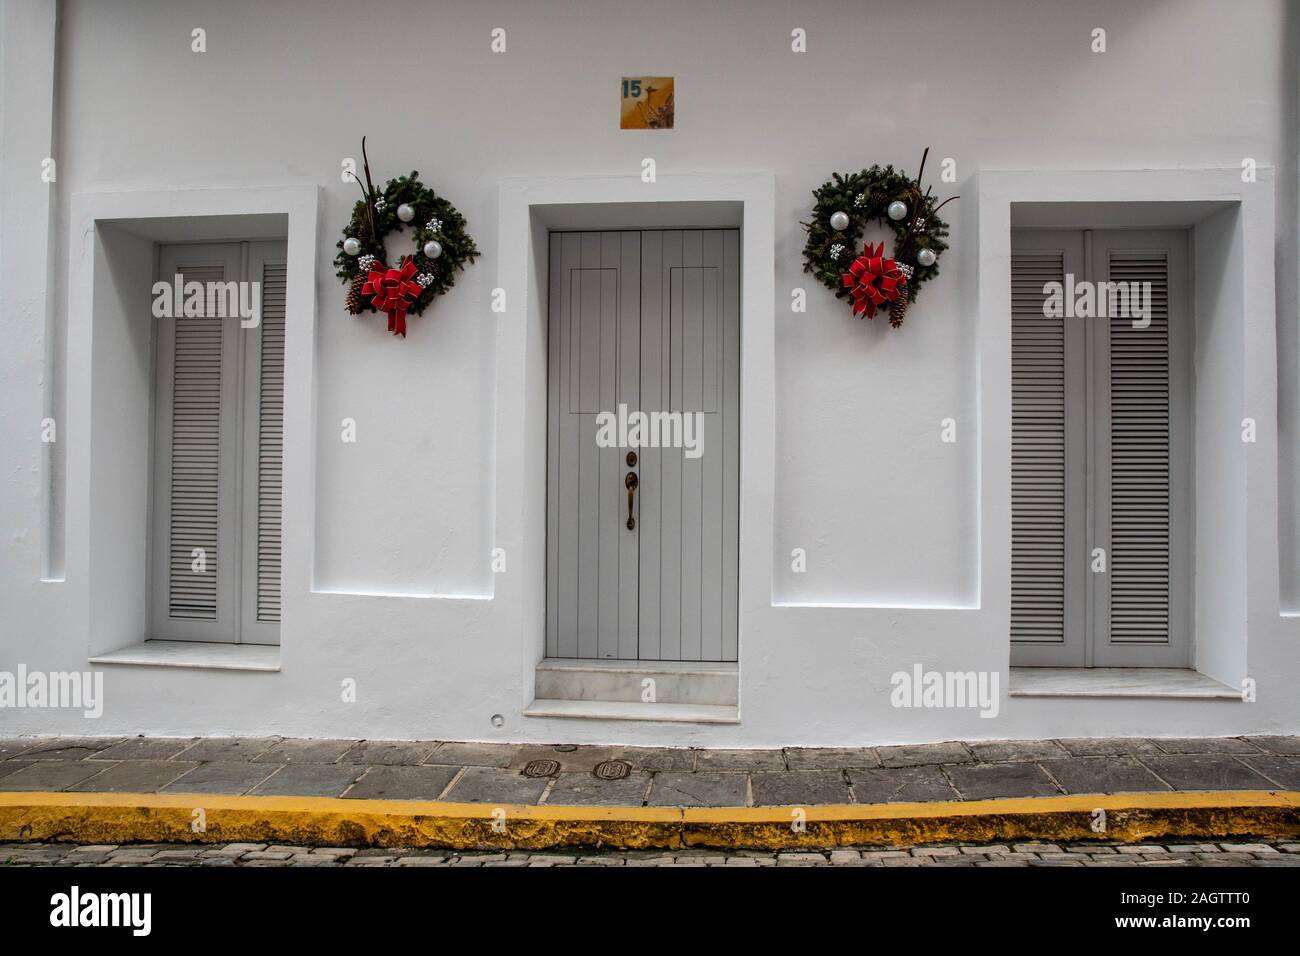 Diese Tür und der 2 Fenster sind Teil eines Stadthauses, weißes Gebäude in der historischen Altstadt San Juan gemalt. Die weißen Wände sind mit 2 Kränzen dekoriert. Stockfoto